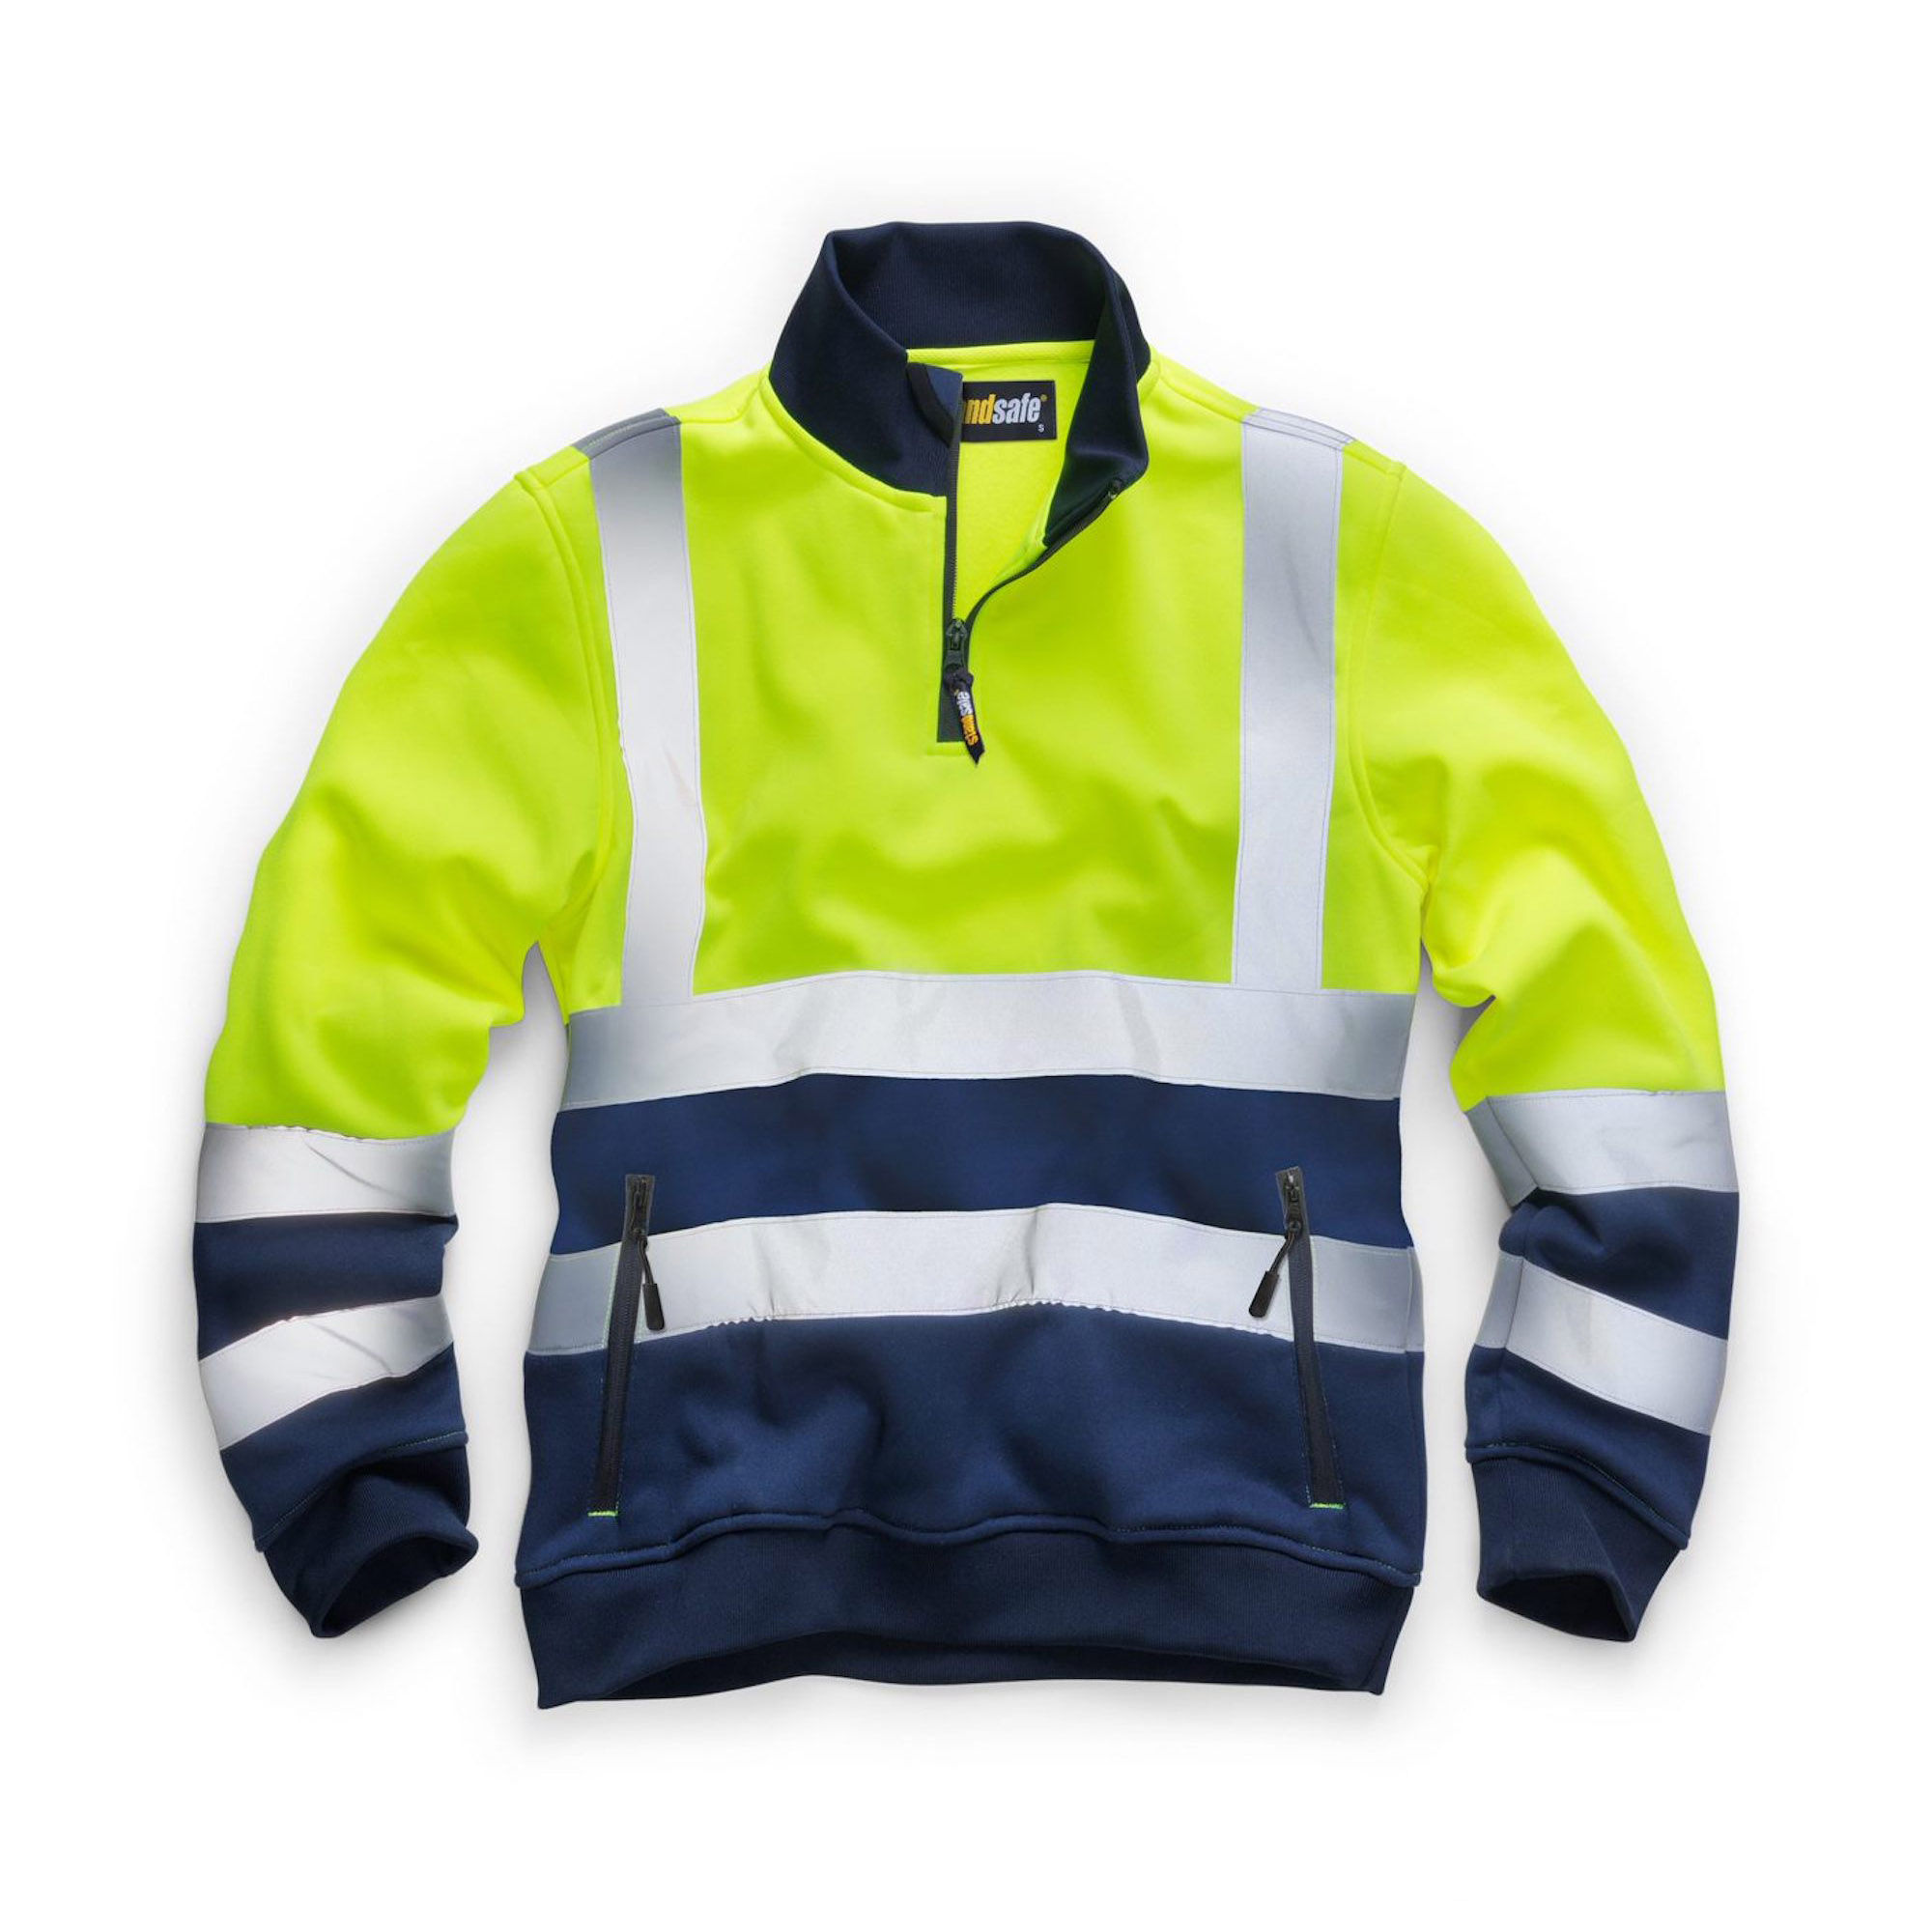 Standsafe Hi-Vis 1/4 Zip Sweatshirt - Yellow/Navy 